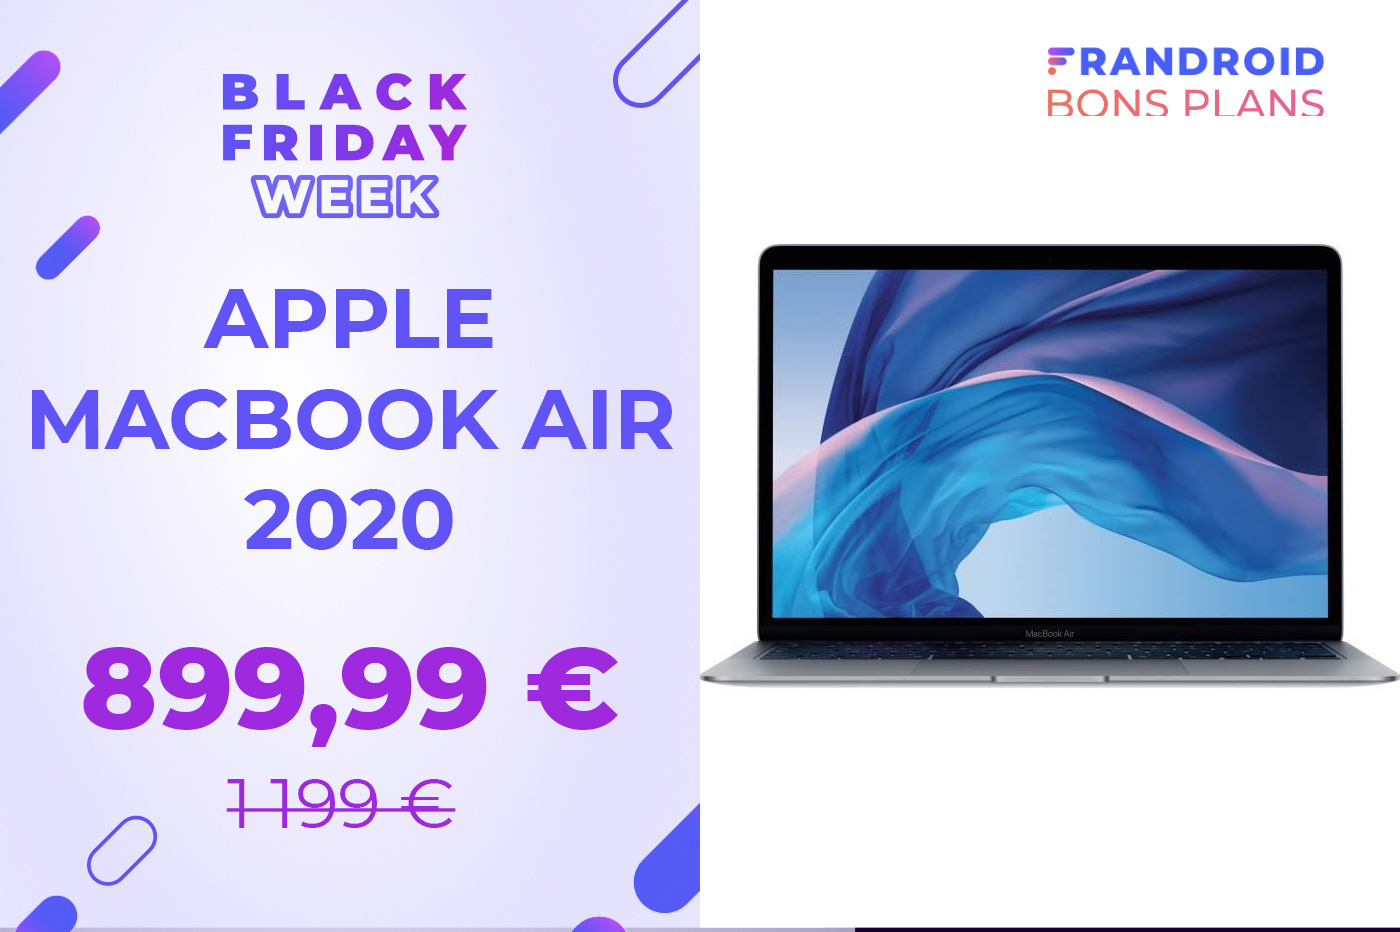 Apple macbook pro black friday 2020 parlee